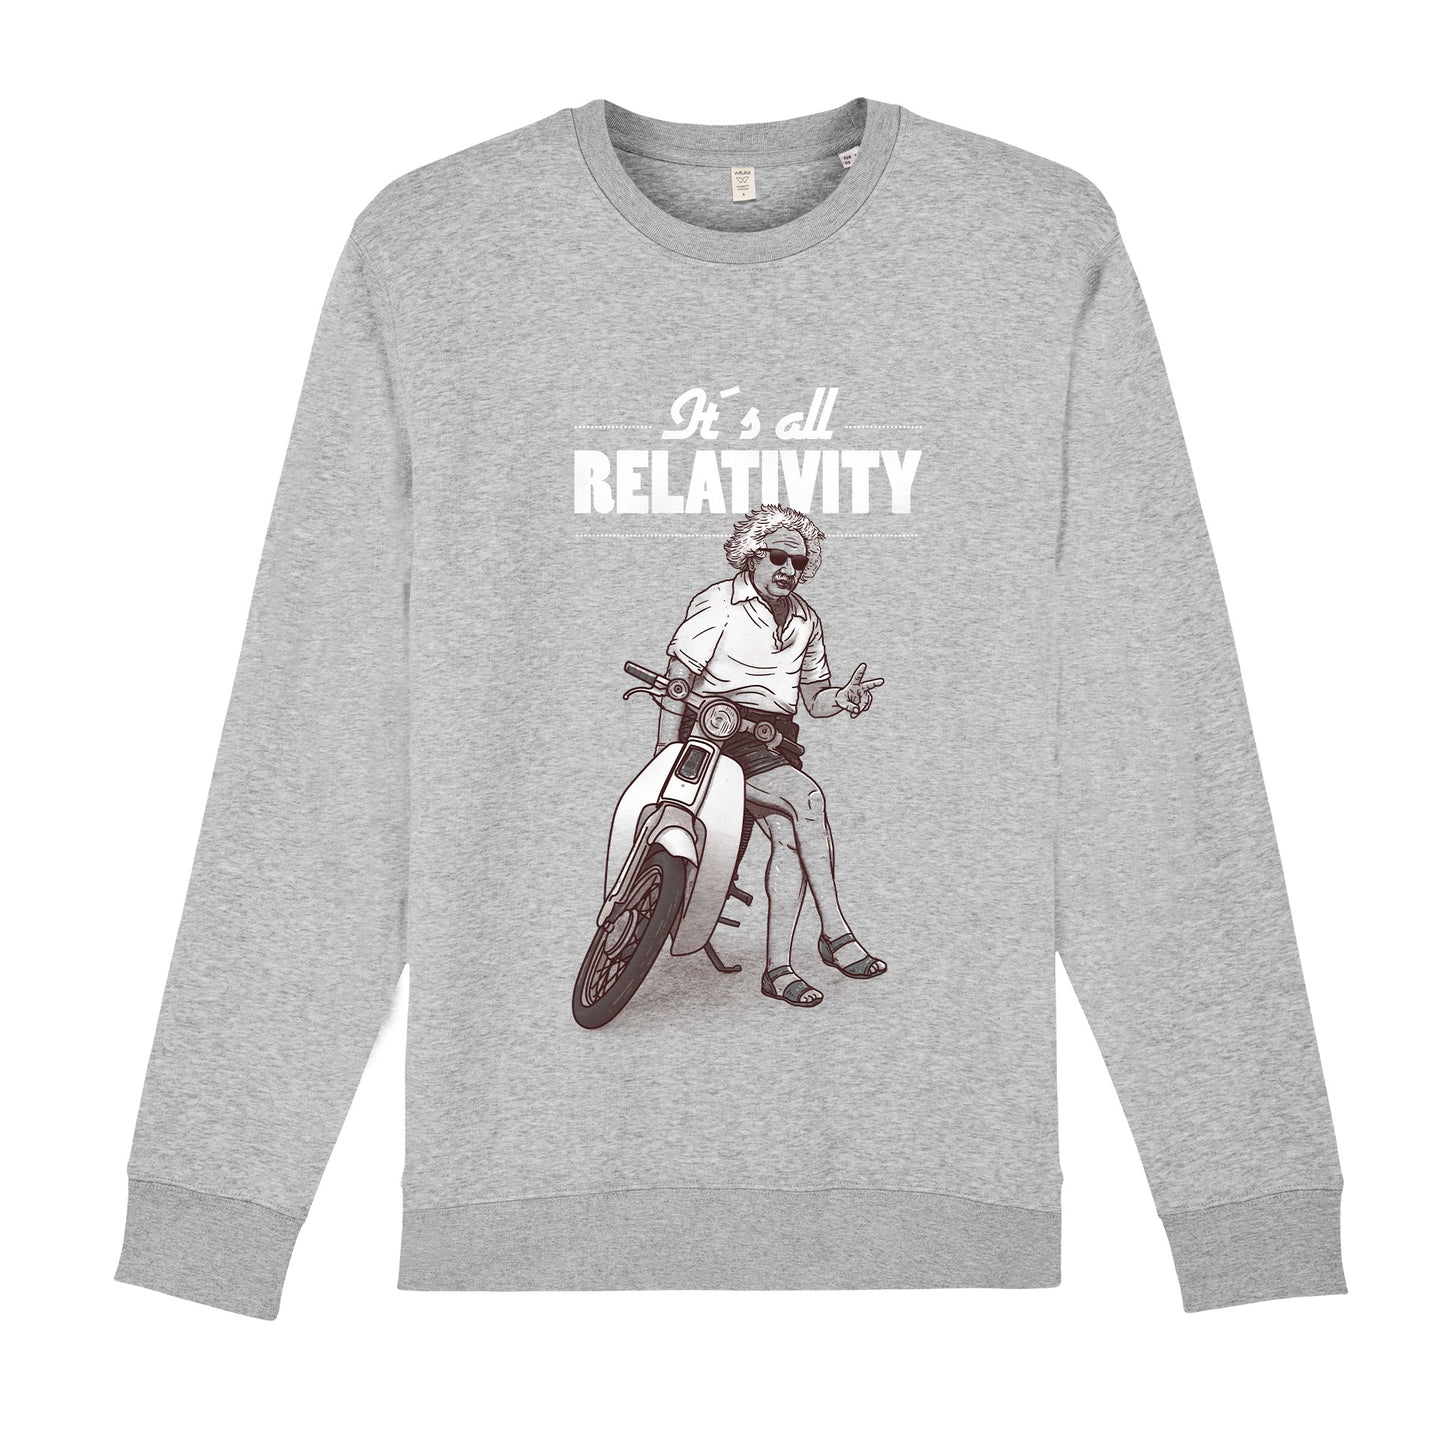 Relativity Sweatshirt